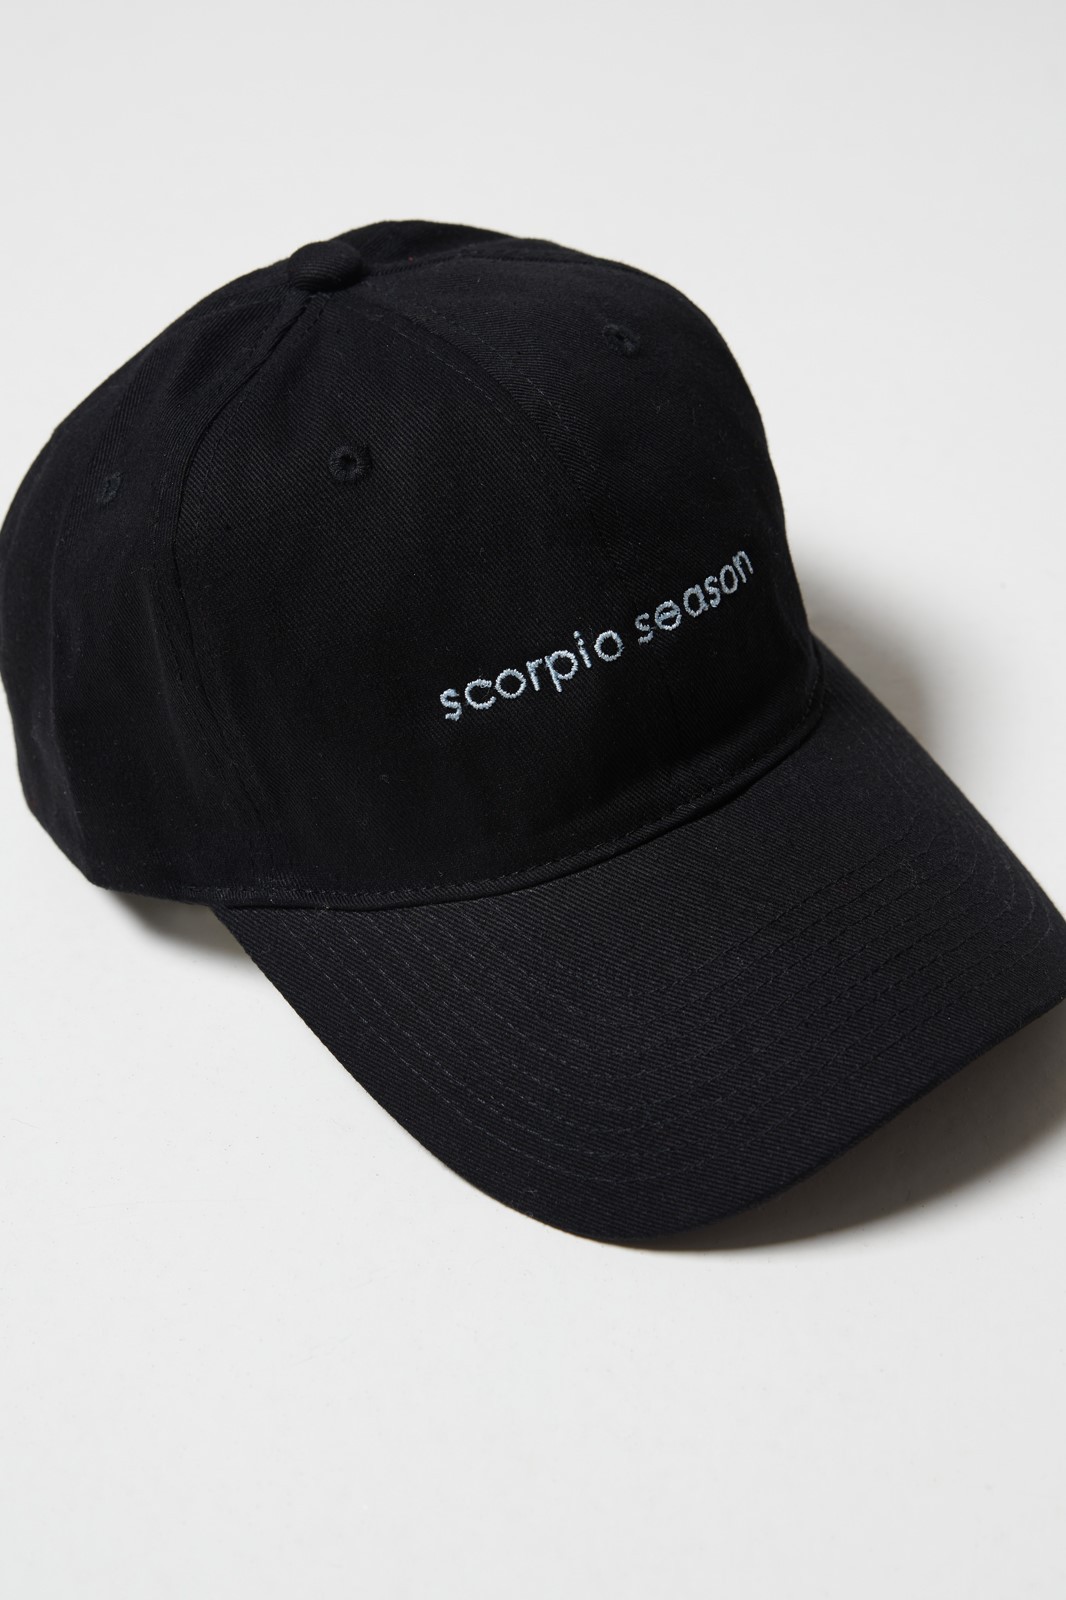 Scorpio Season cap - MILKWHITE